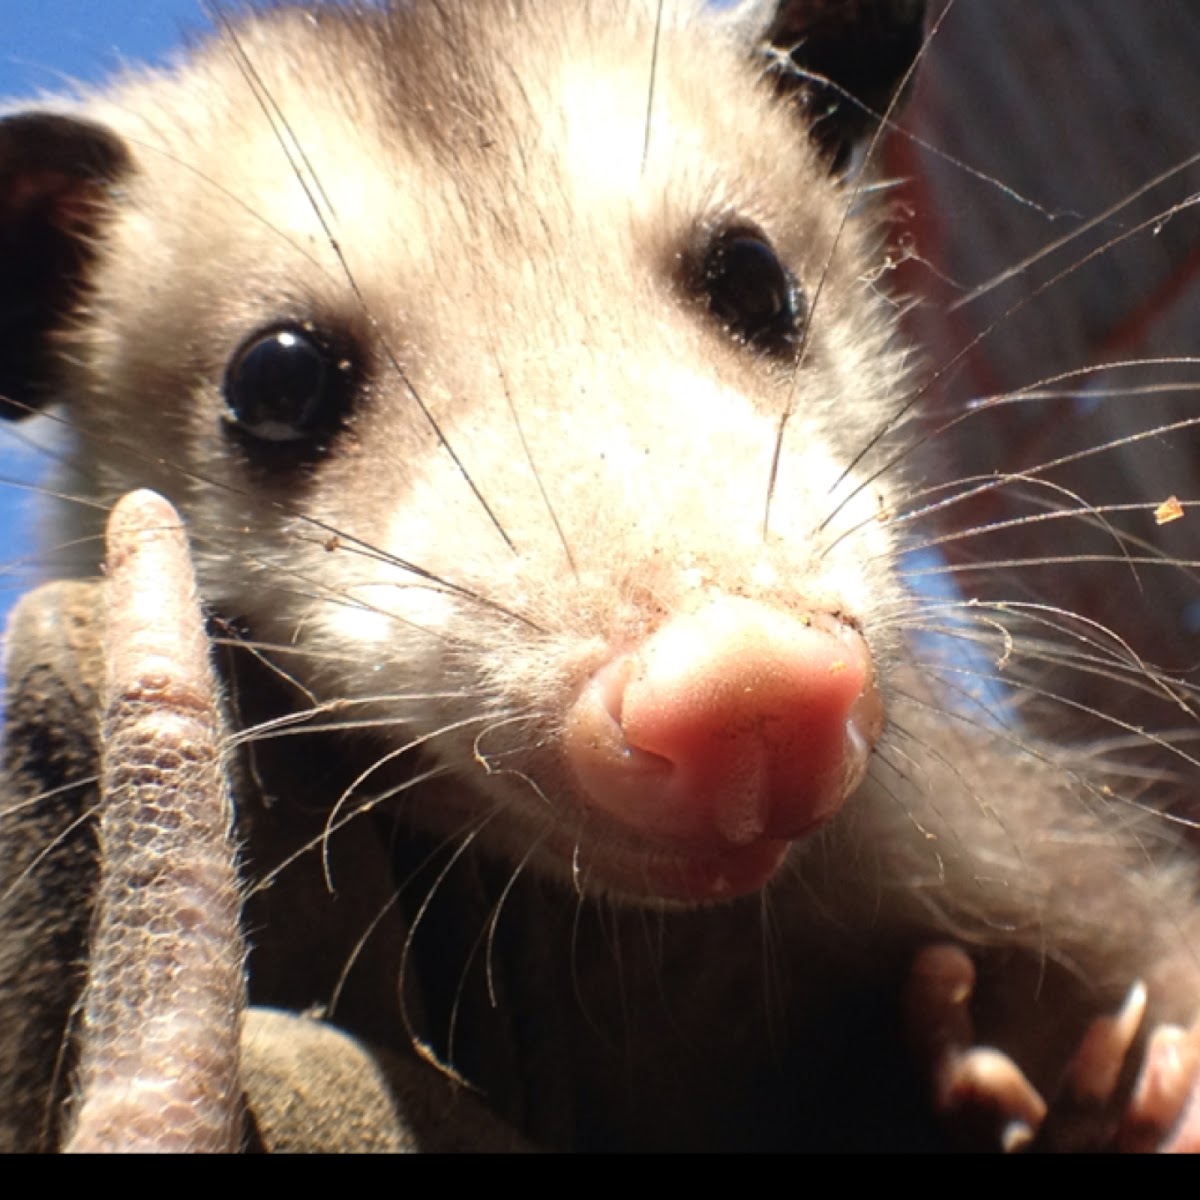 Opossum or possum